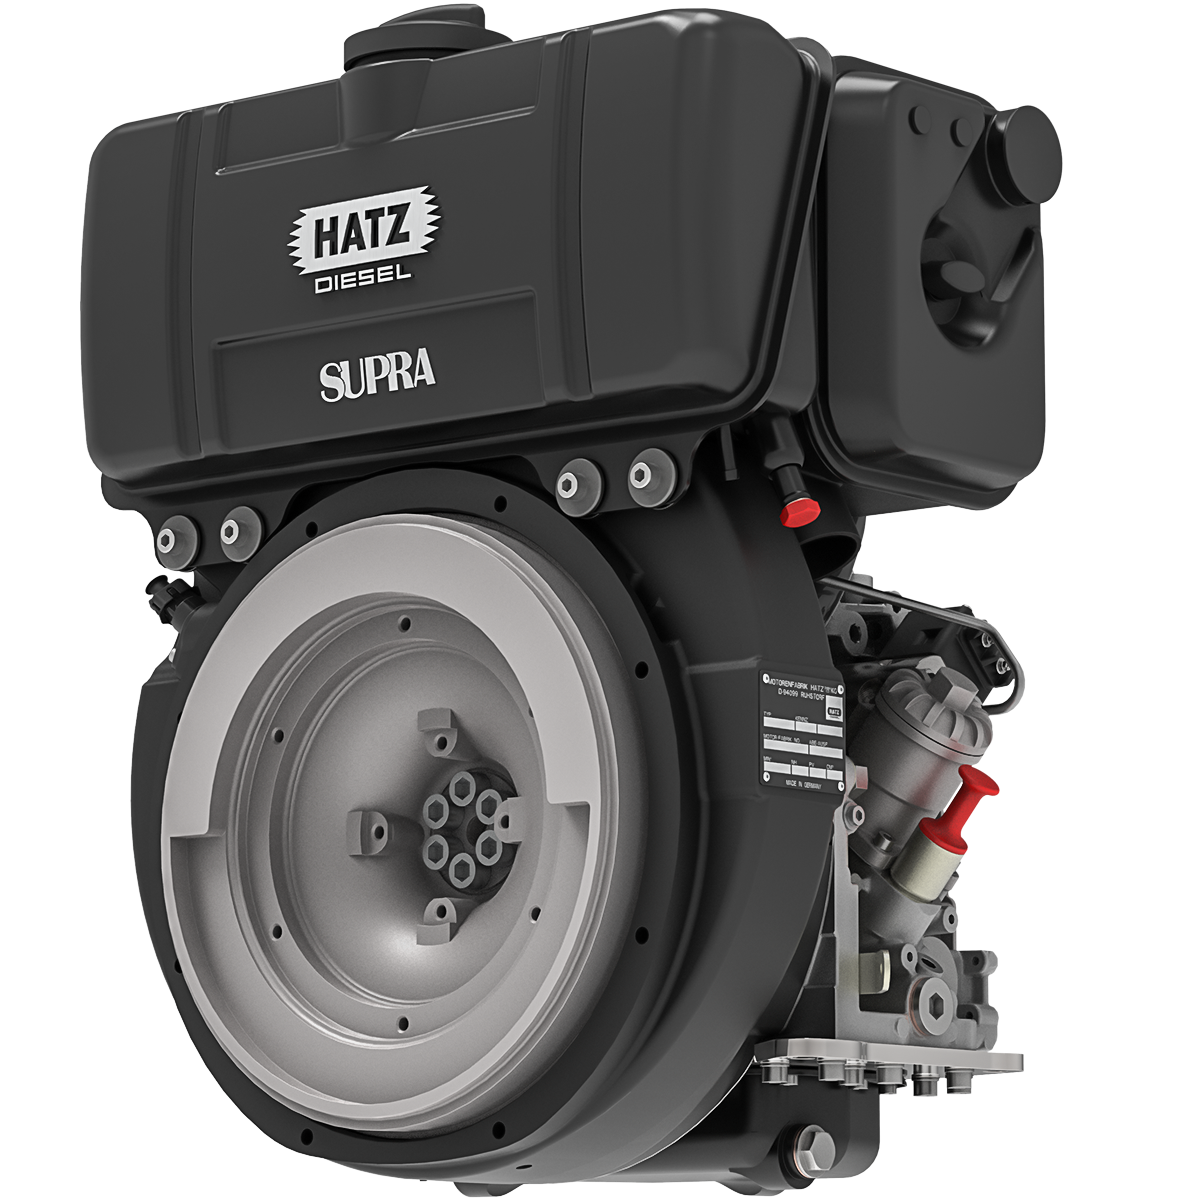 Лучшие дизельные моторы. Hatz 3l41c. Hatz Diesel 2 цилиндровый. Дизель Hatz 1b20 одноцилиндровый. Двигатель Hatz Diesel.